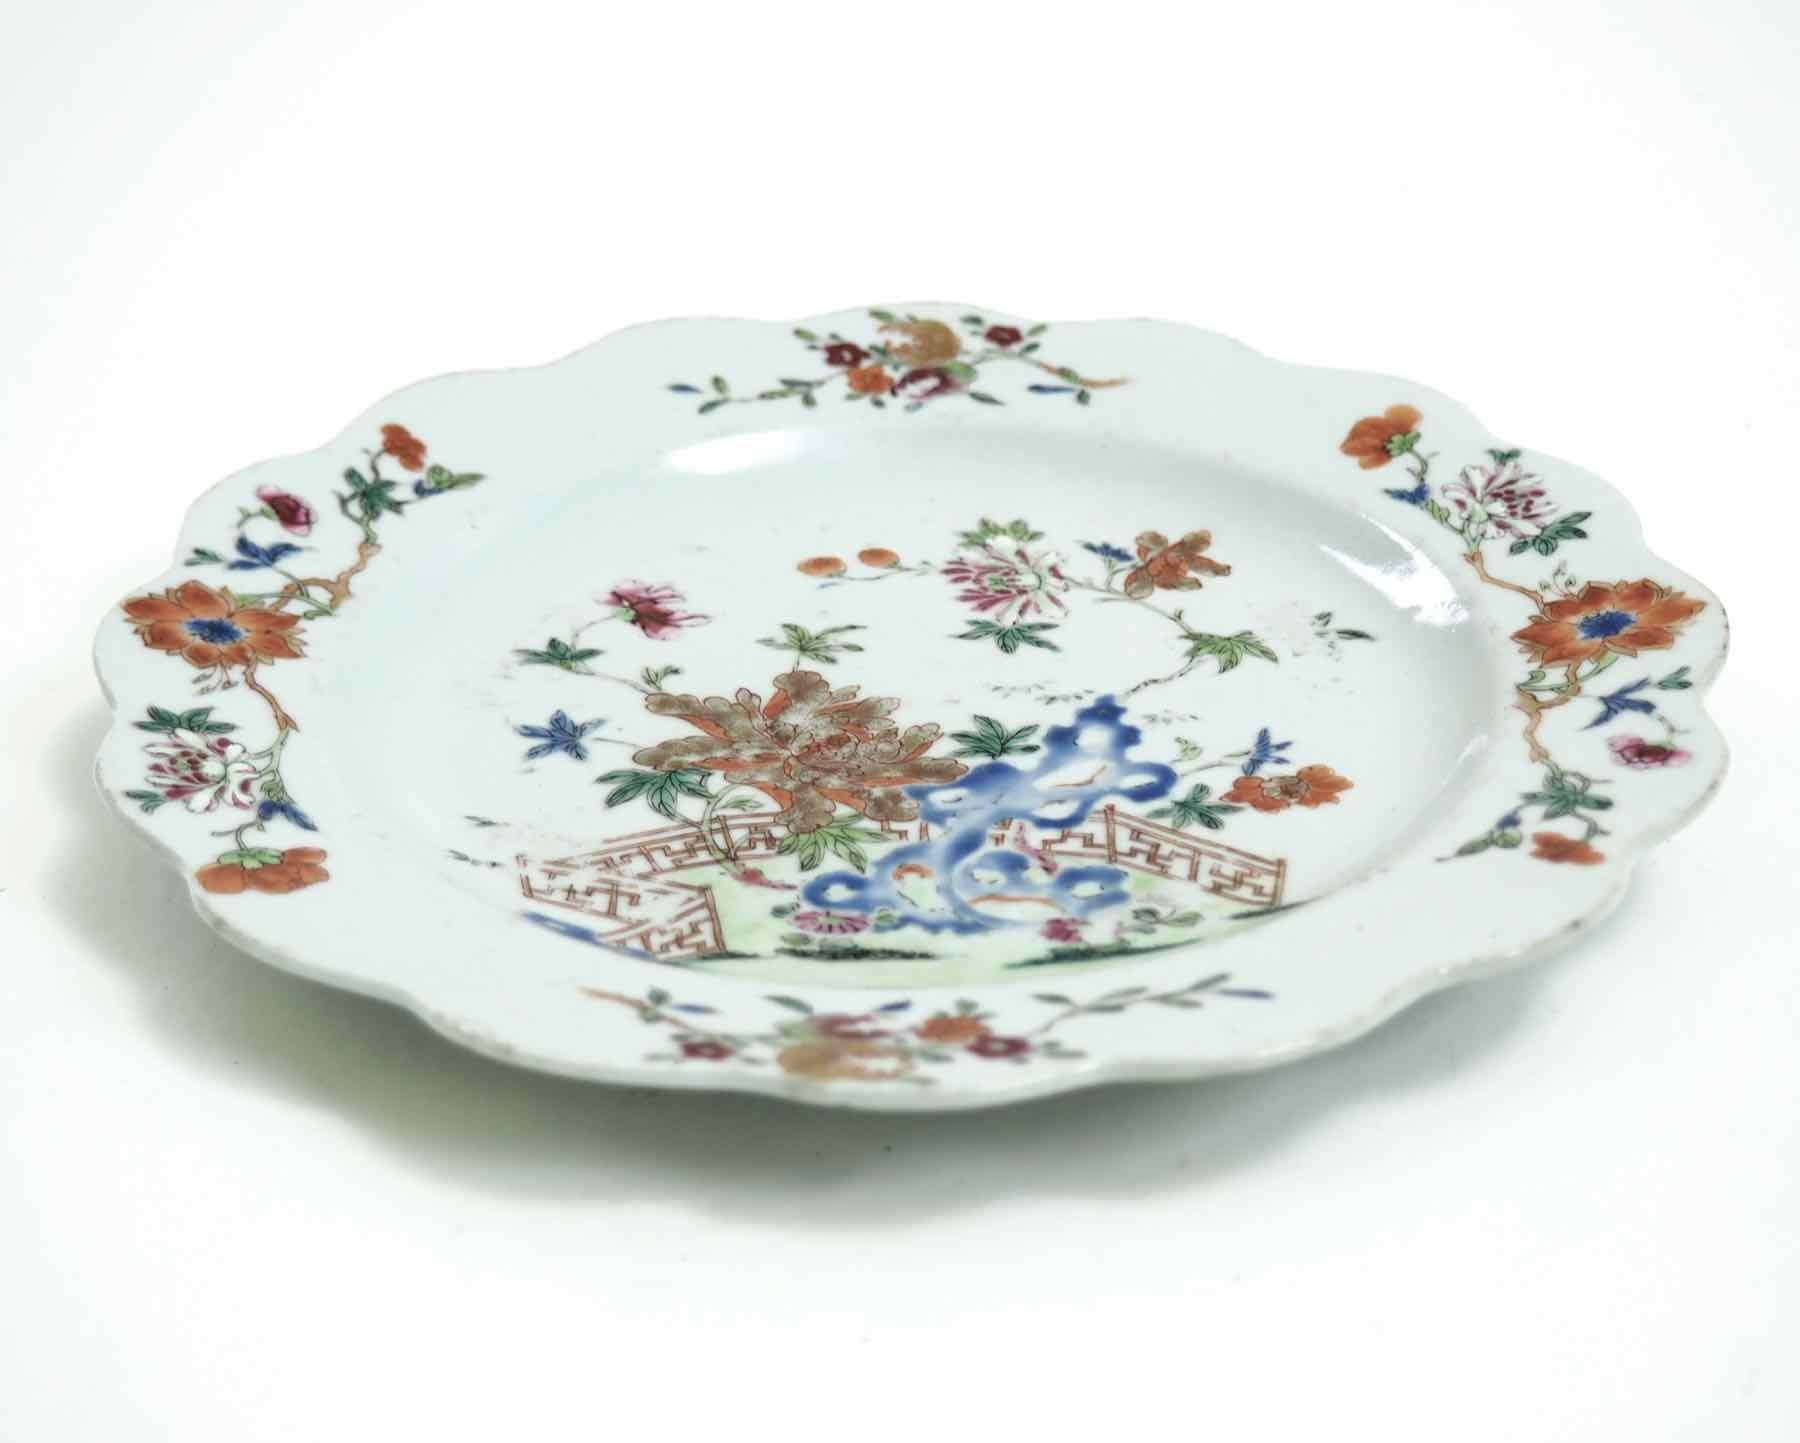 Chinesischer Teller, 18. Jahrhundert
Maße: H. 2 Dia. 23 cm 
H. 0.7 Durchm. 9 in.